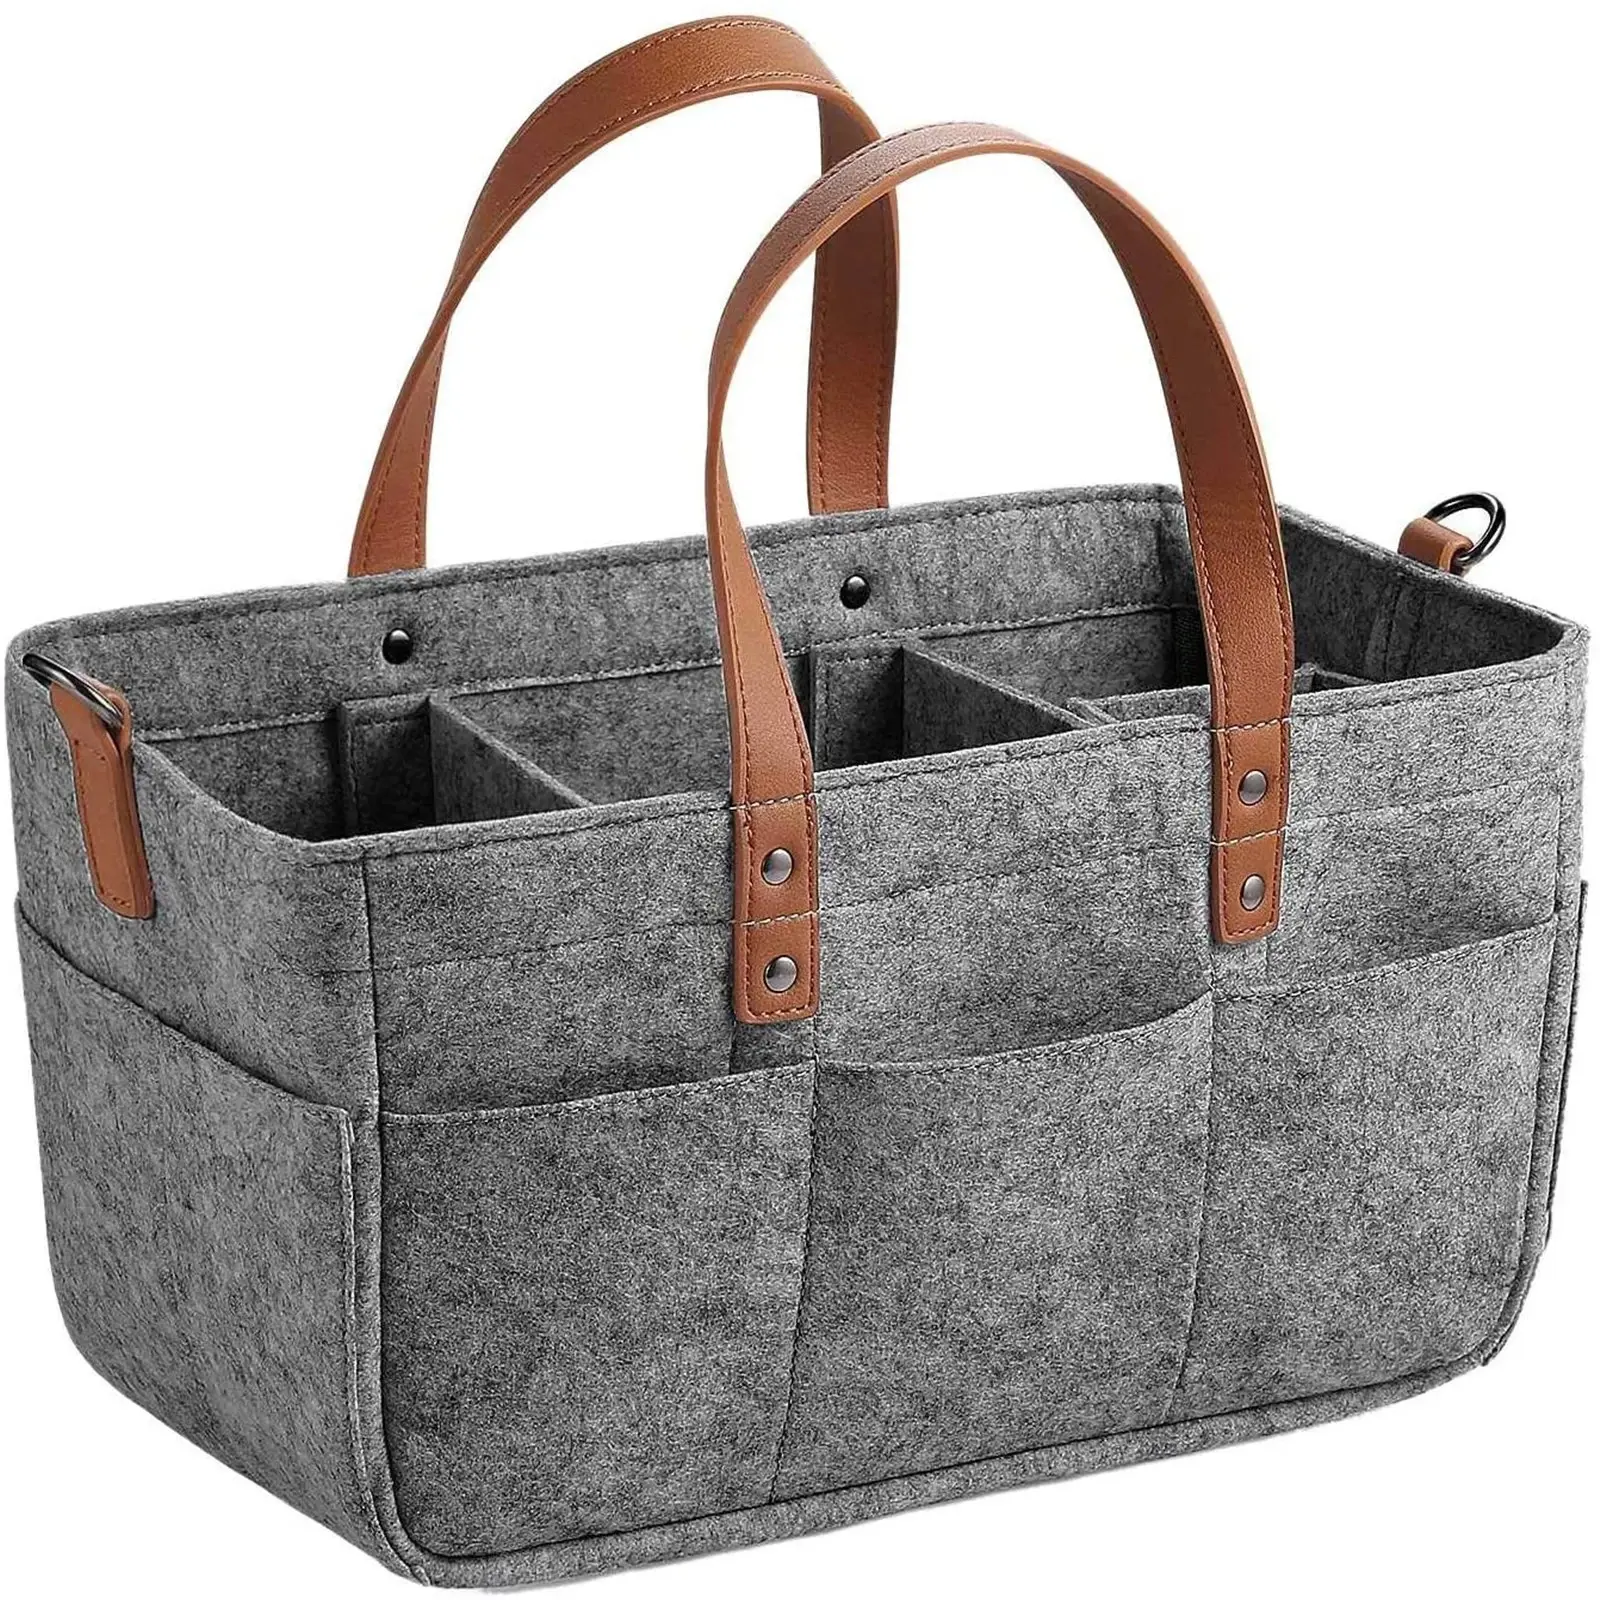 Custom size fashion organizer felt nappy caddy storage bag with PU leather handle